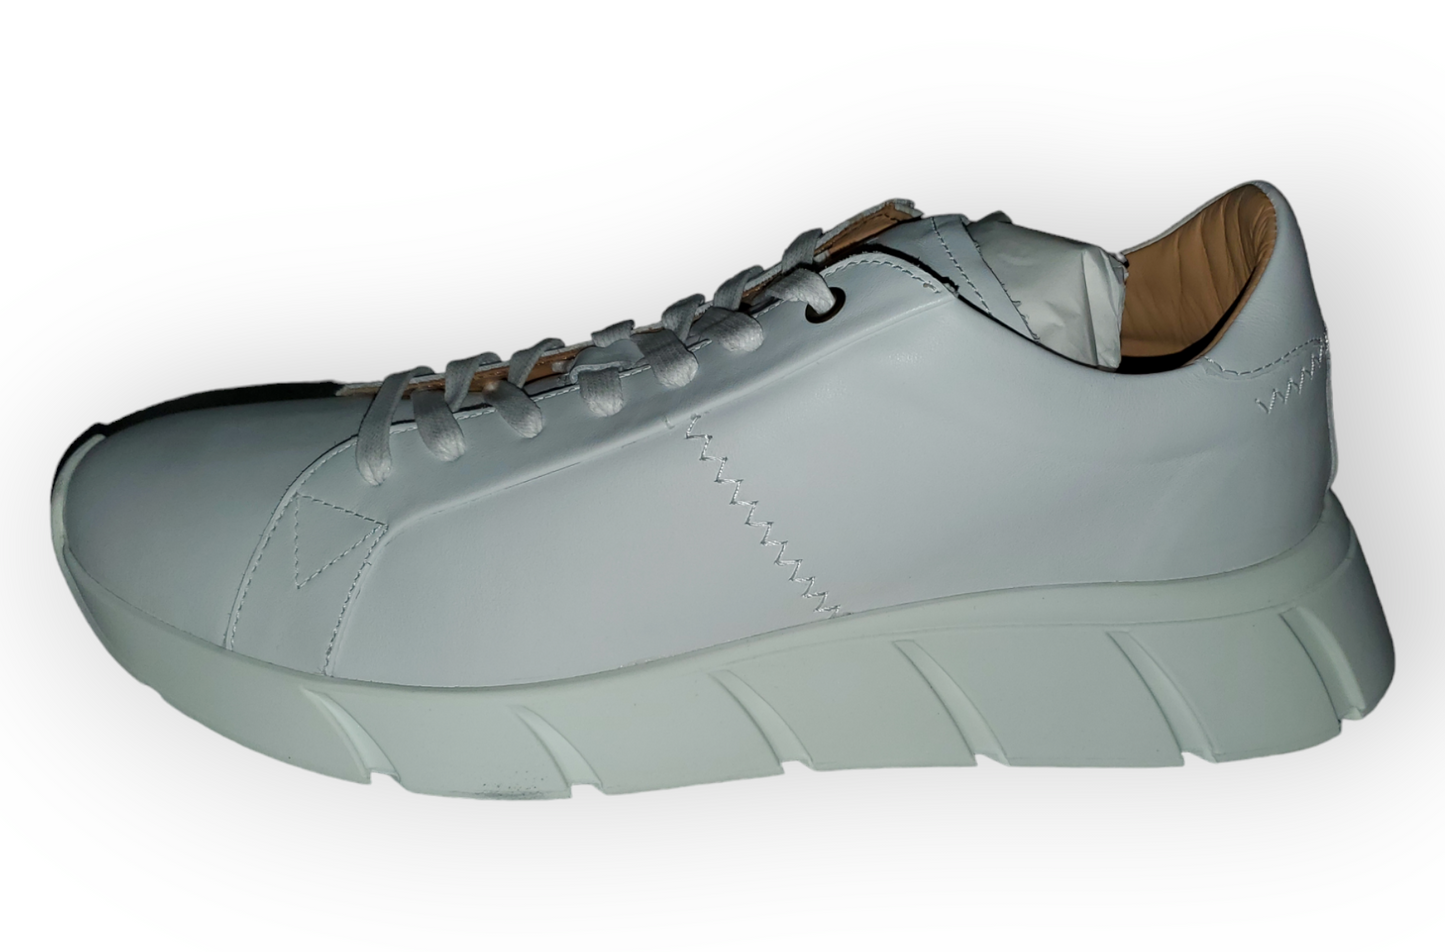 Nera Pluto White Sneakers Size 13|New